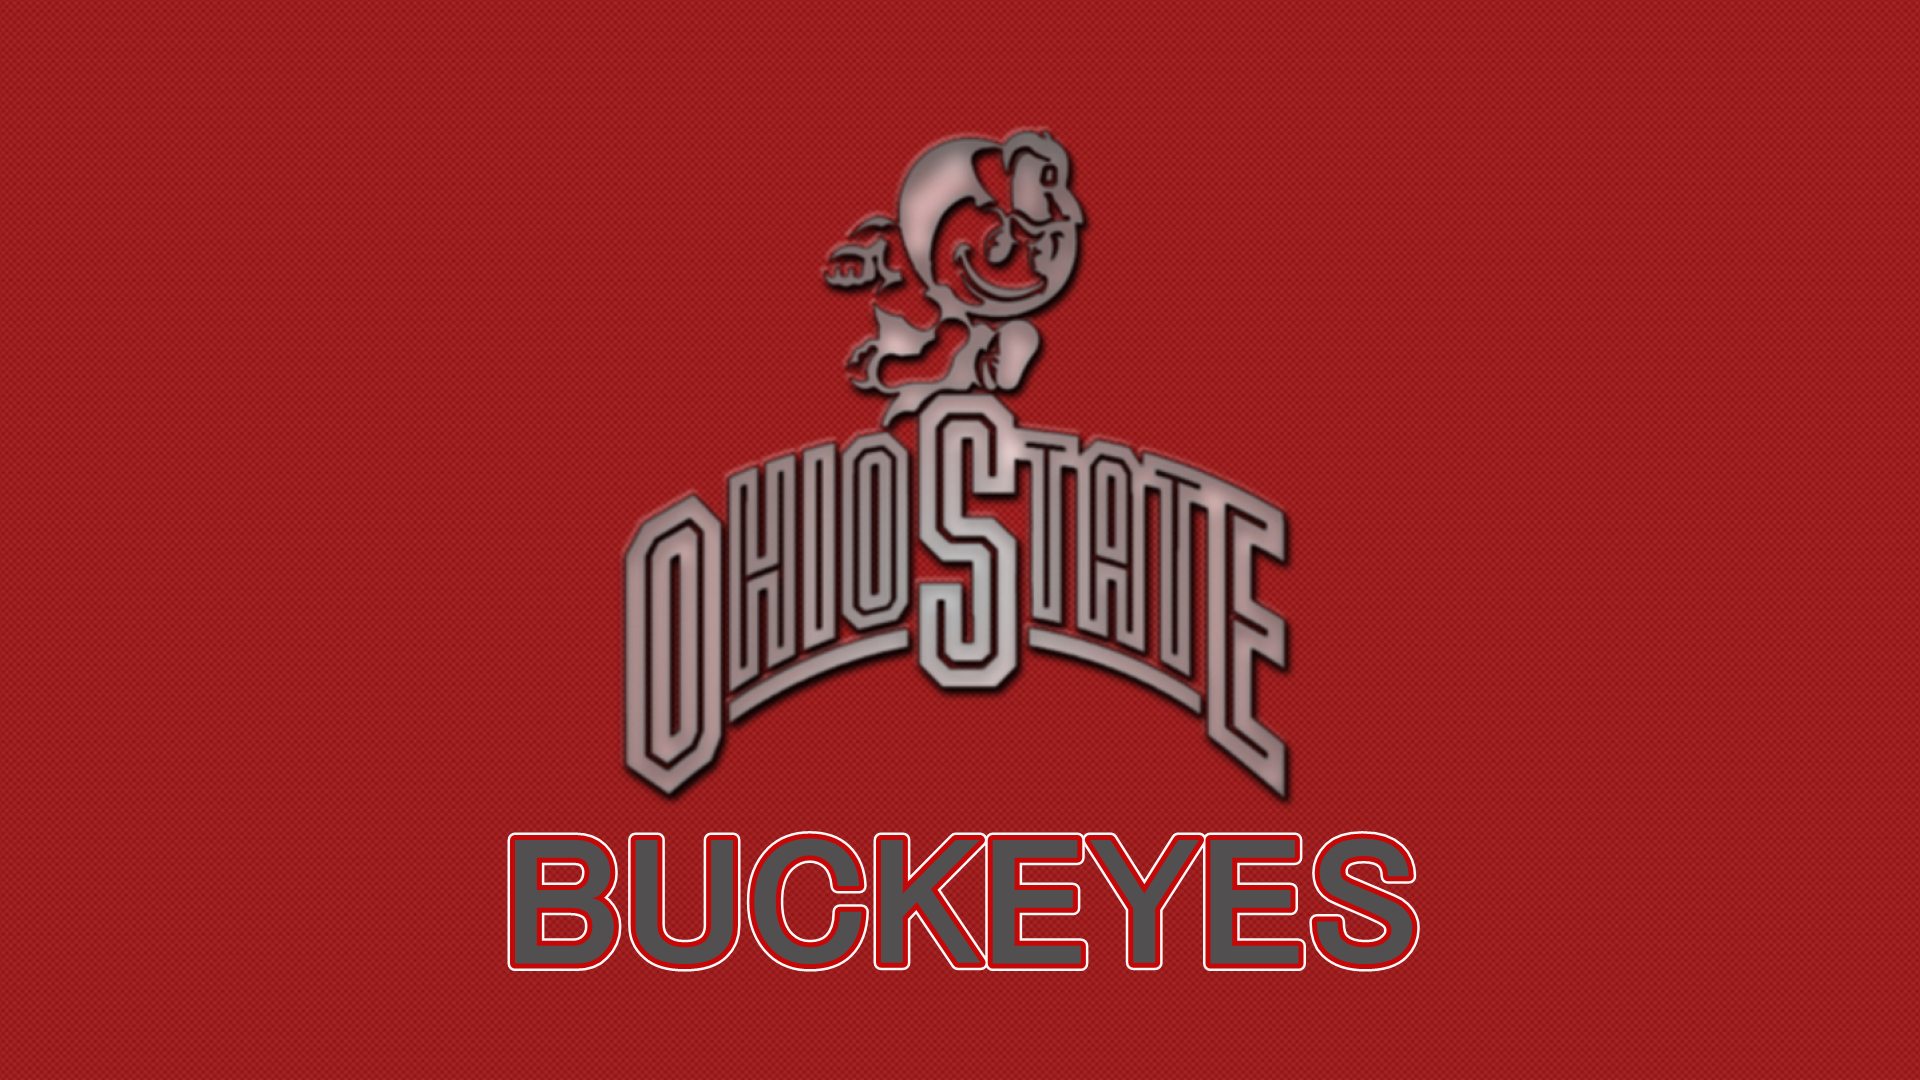 OHIO STATE BRUTUS BUCKEYE - Ohio State Football Wallpaper ...